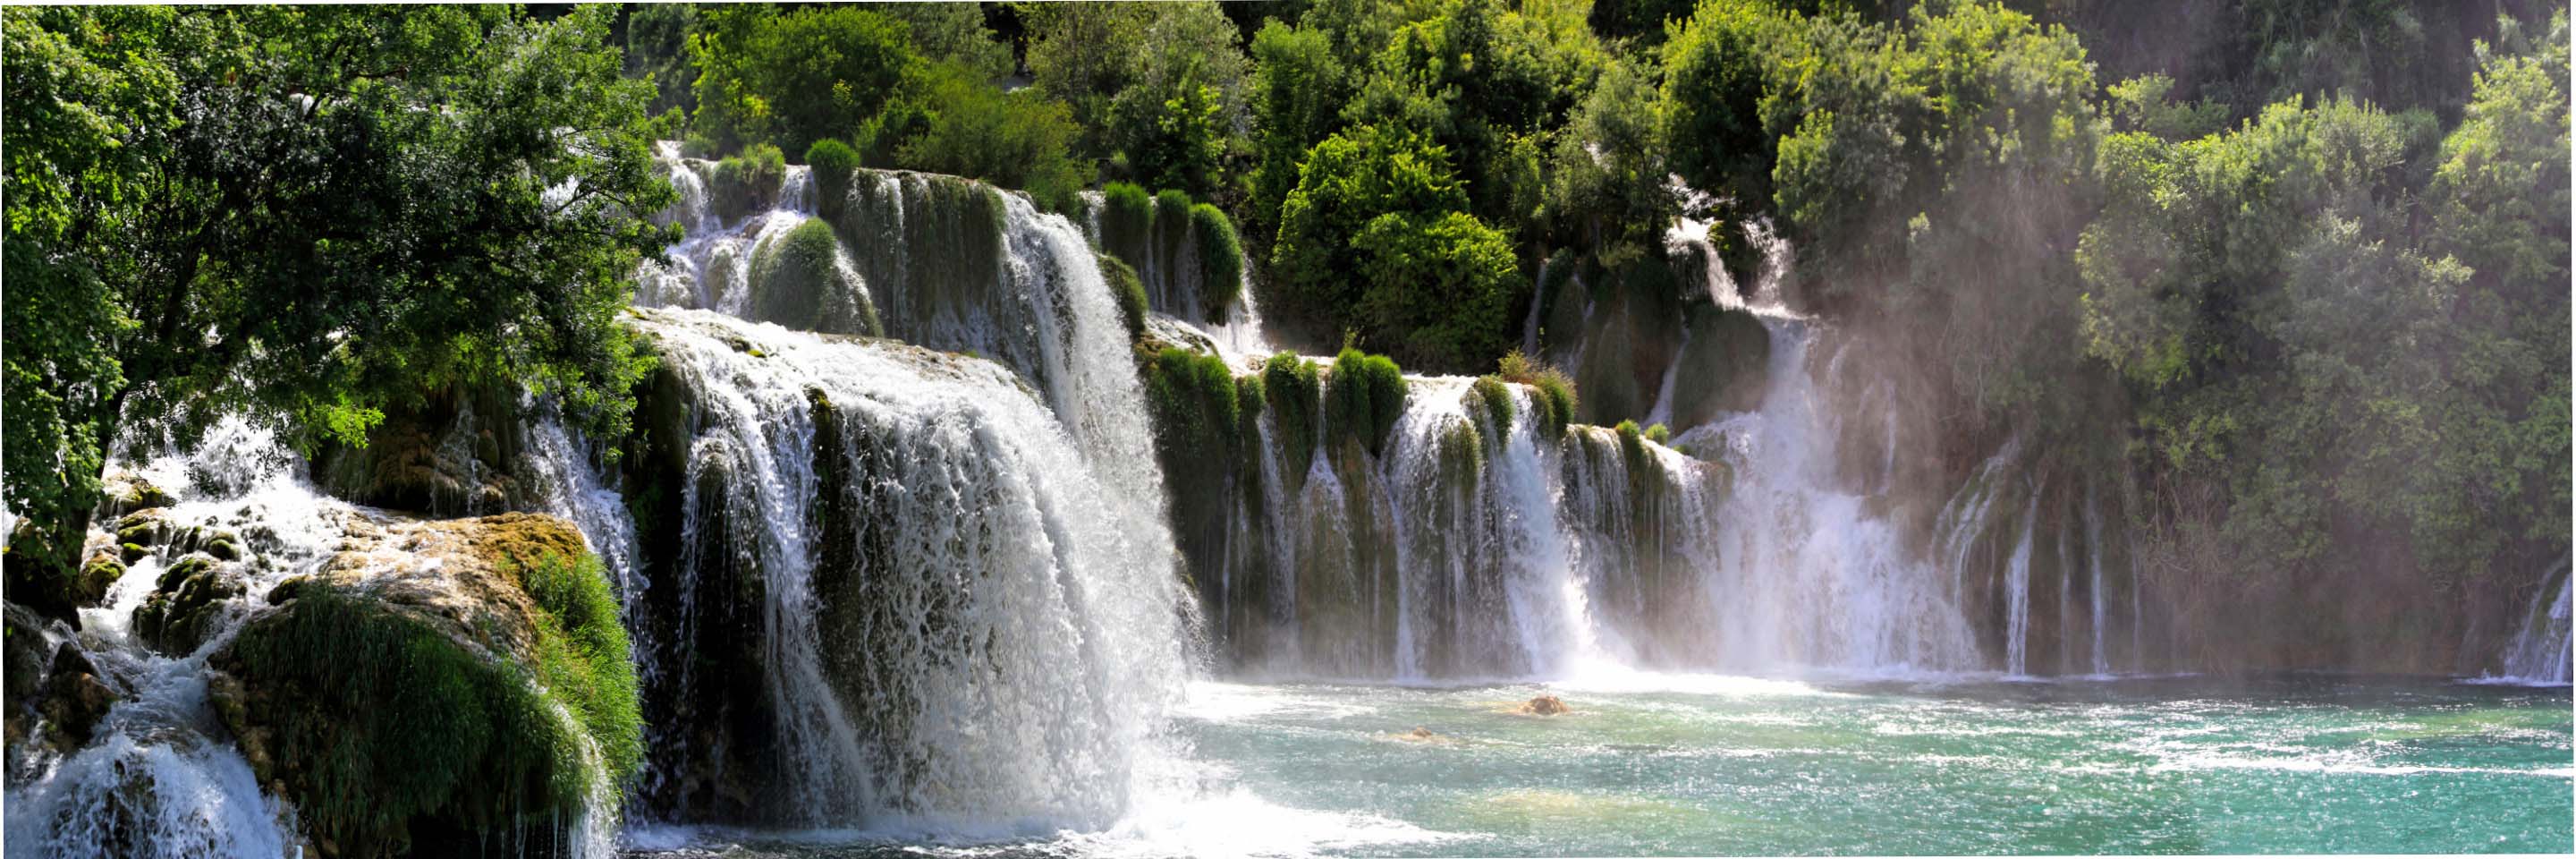 Wallpaper Mural Waterfalls in Krka National Park, Croatia